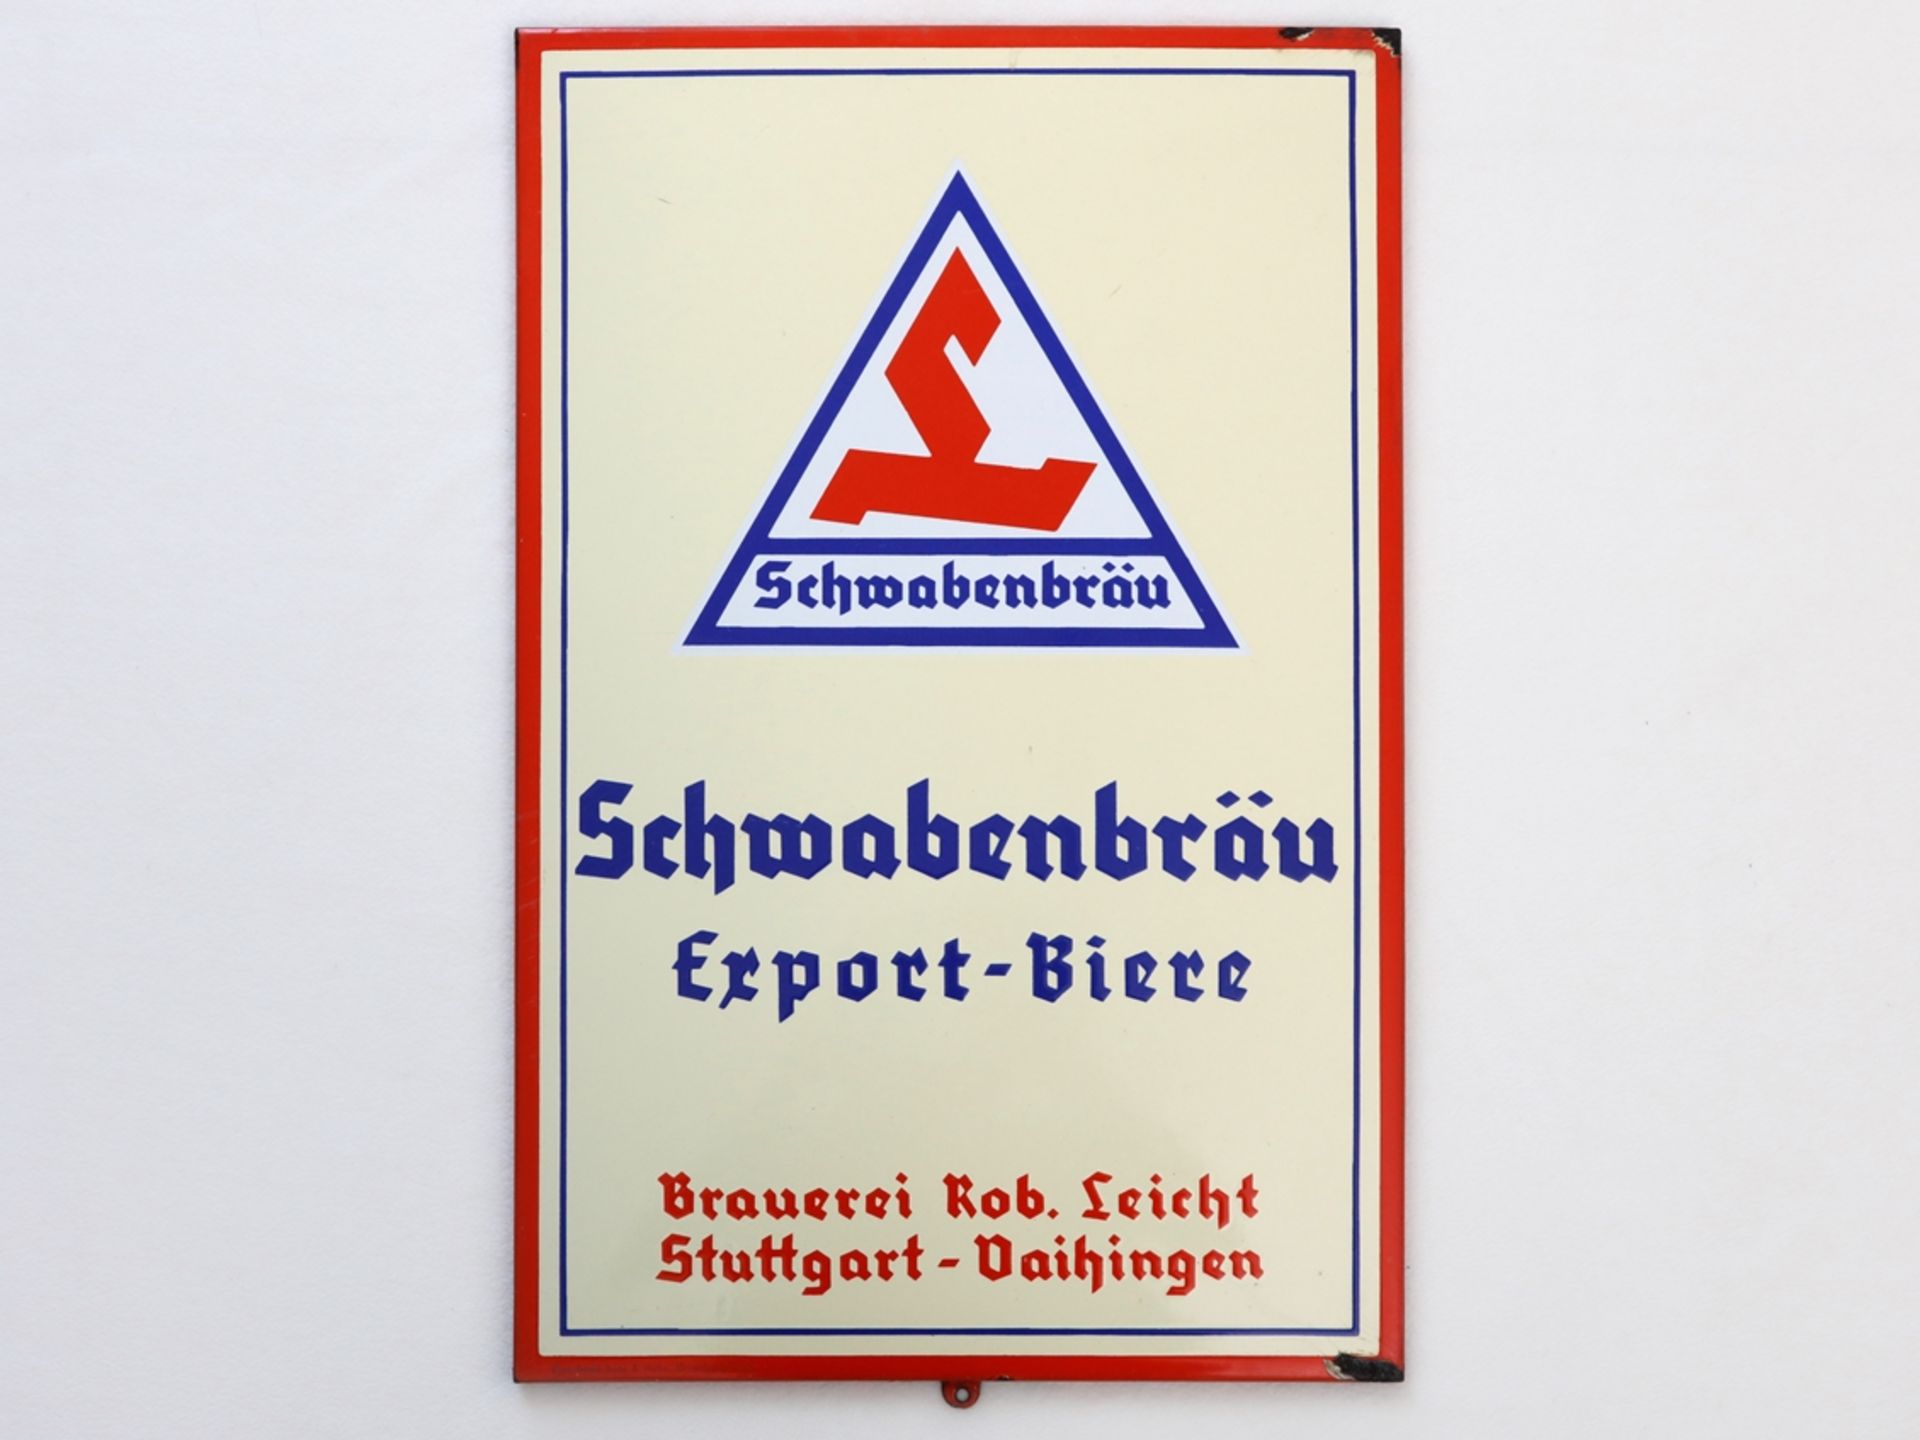 Emailschild Schwabenbräu, Brauerei Rob. Leicht, Stuttgart-Vaihingen, um 1950 - Bild 7 aus 7